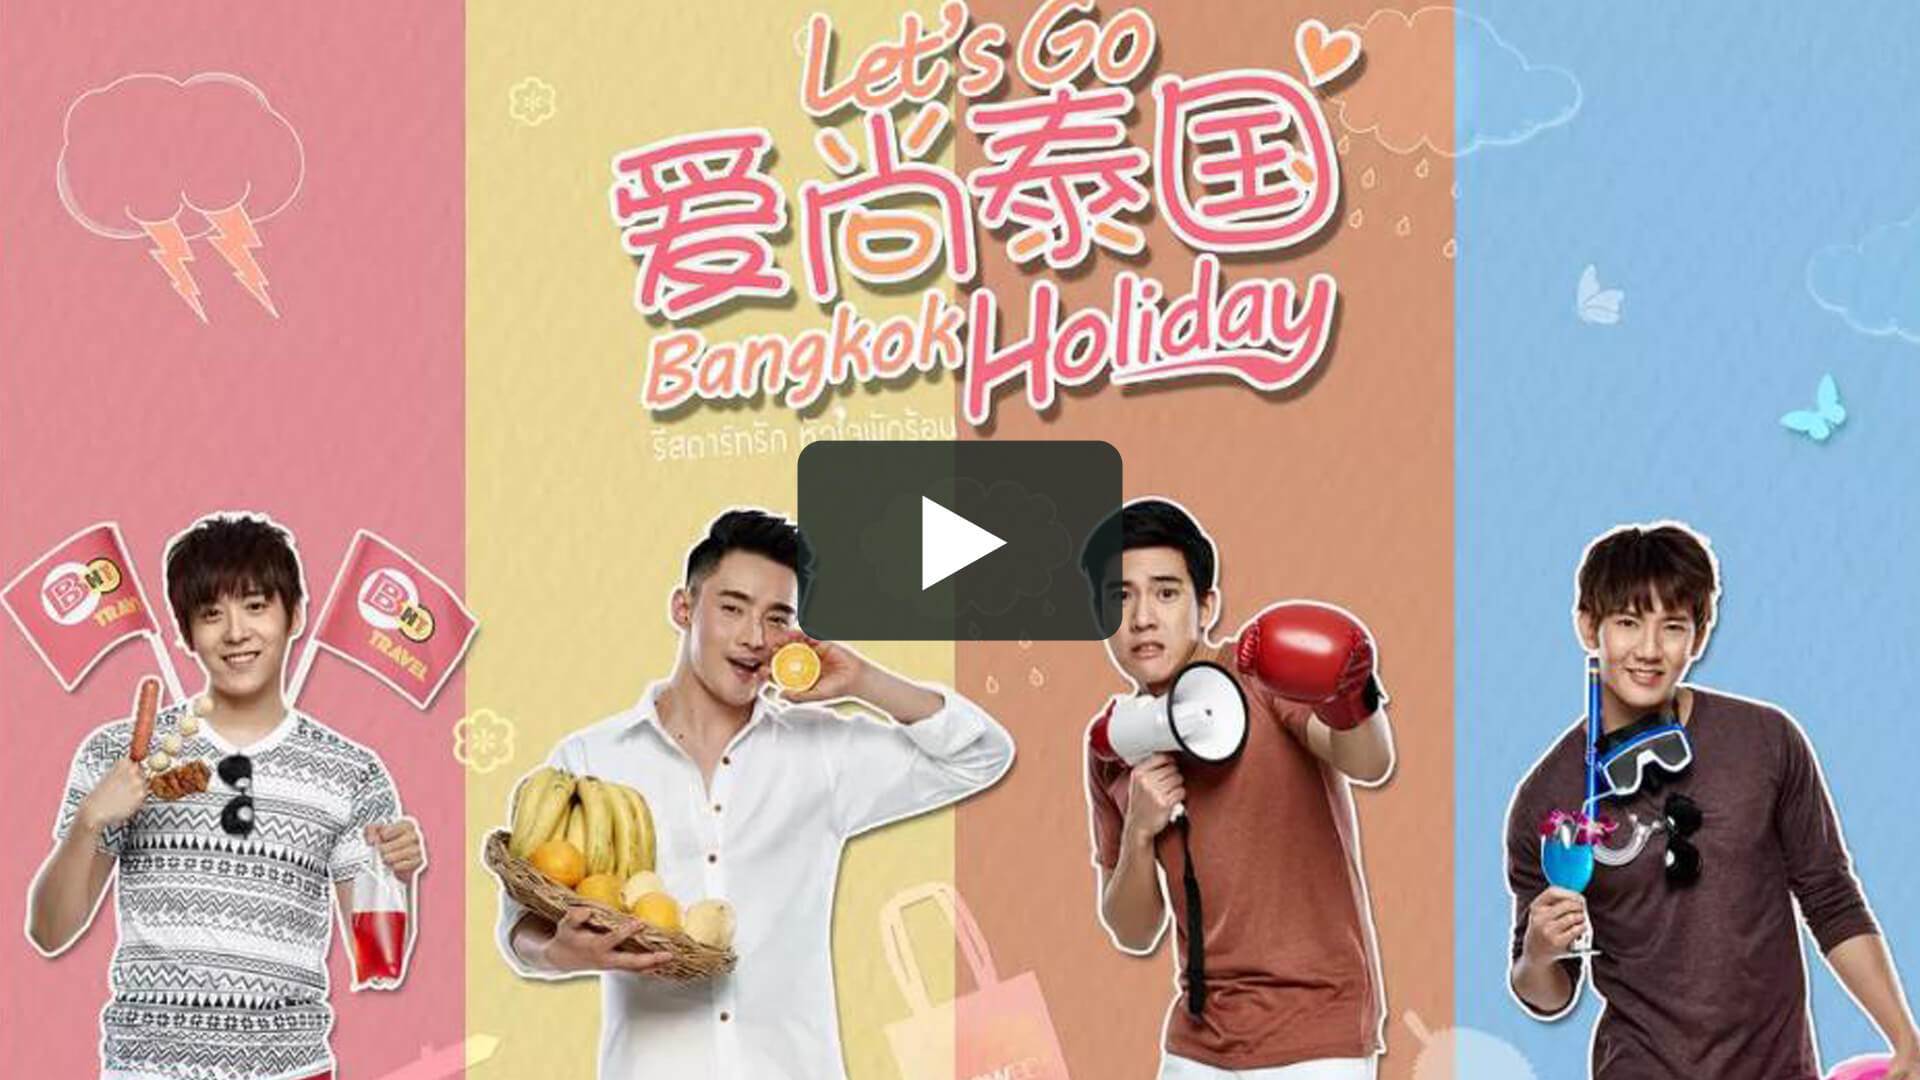 愛尚泰國 - Let’s go bangkok holiday